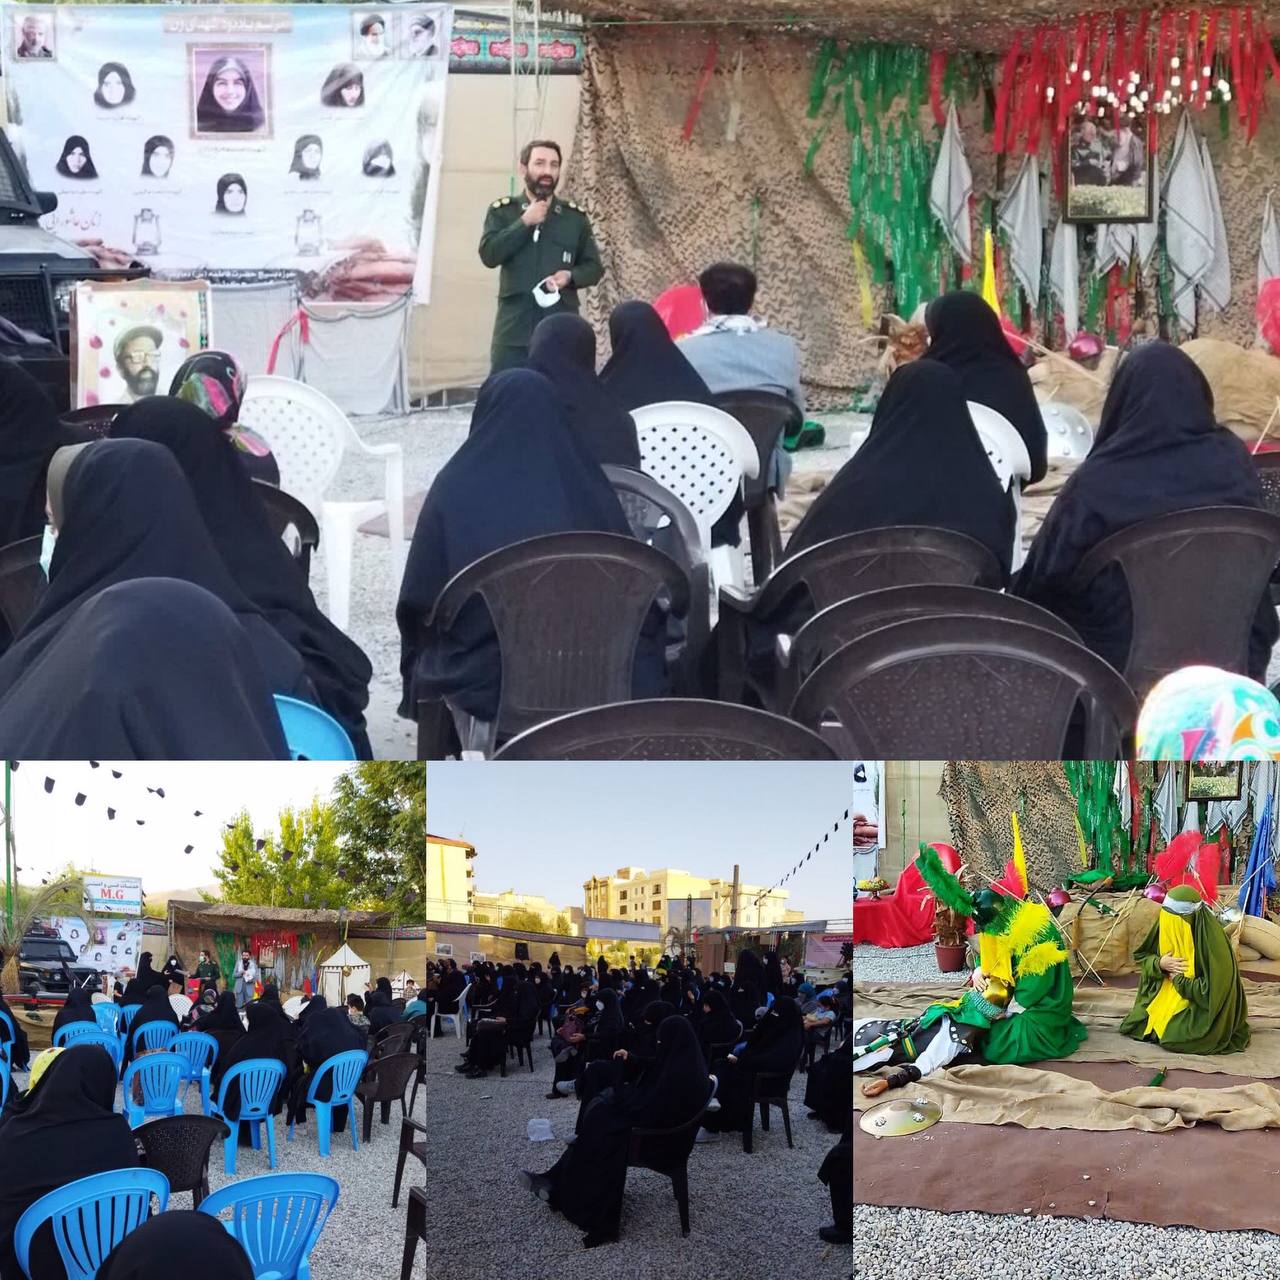 همایش زنان عاشورایی به مناسبت هفته دفاع مقدس و اربعین حسینی با اجرای خطبه خوانی حضرت زینب س در محل نمایشگاه و مزار شهدای گمنام برگزار شد.